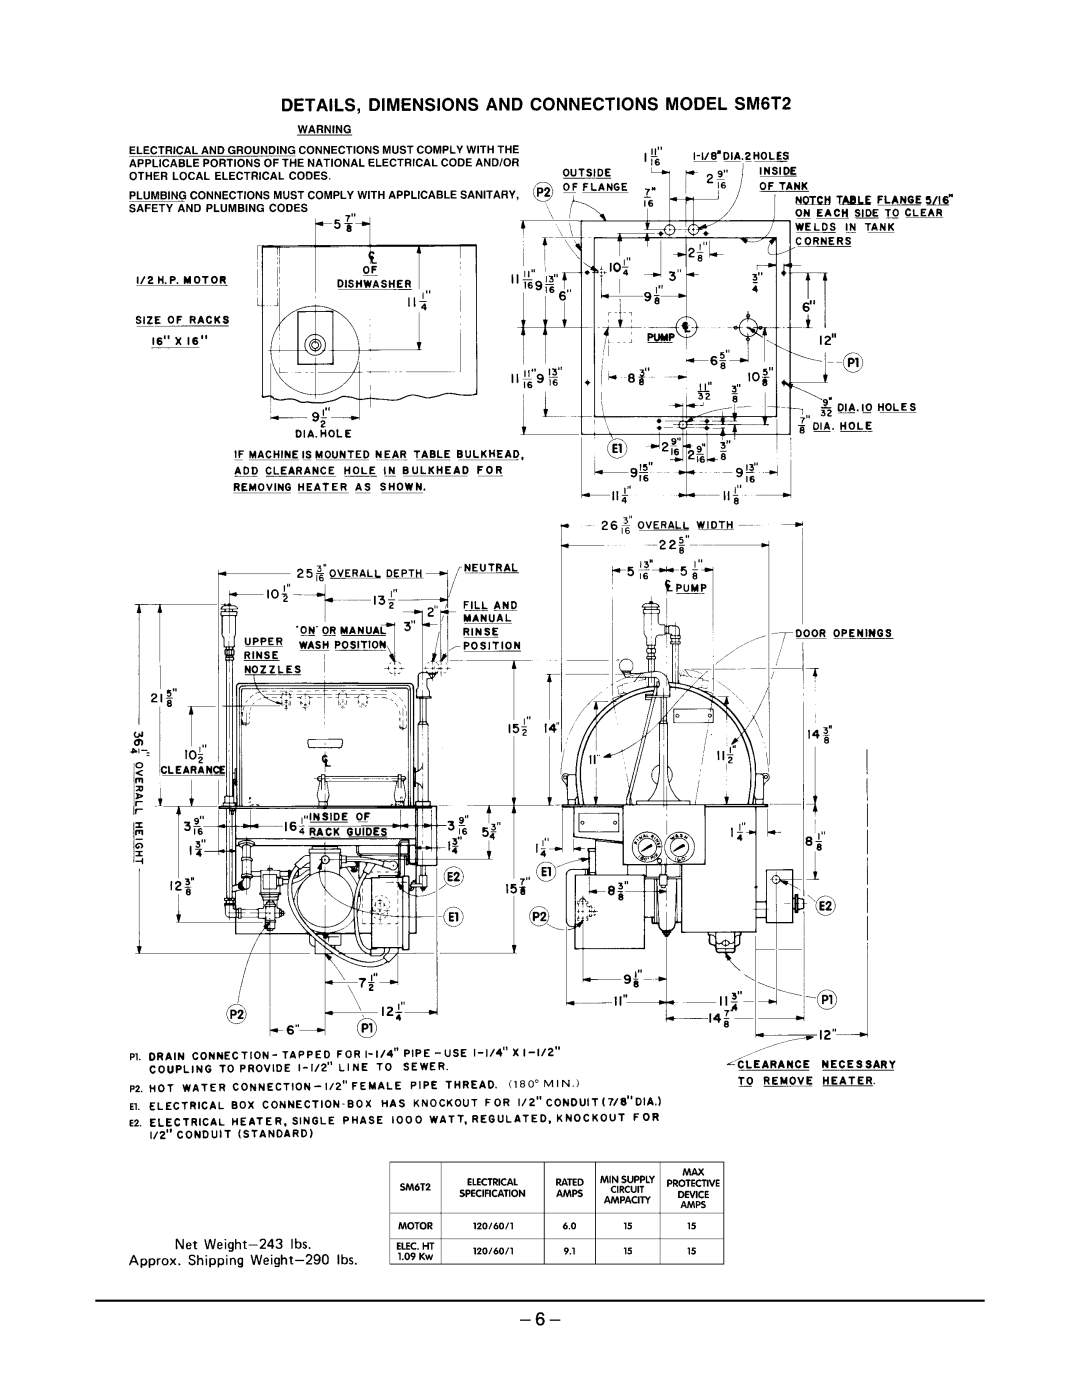 Hobart SM6T2 ML-110857 manual 